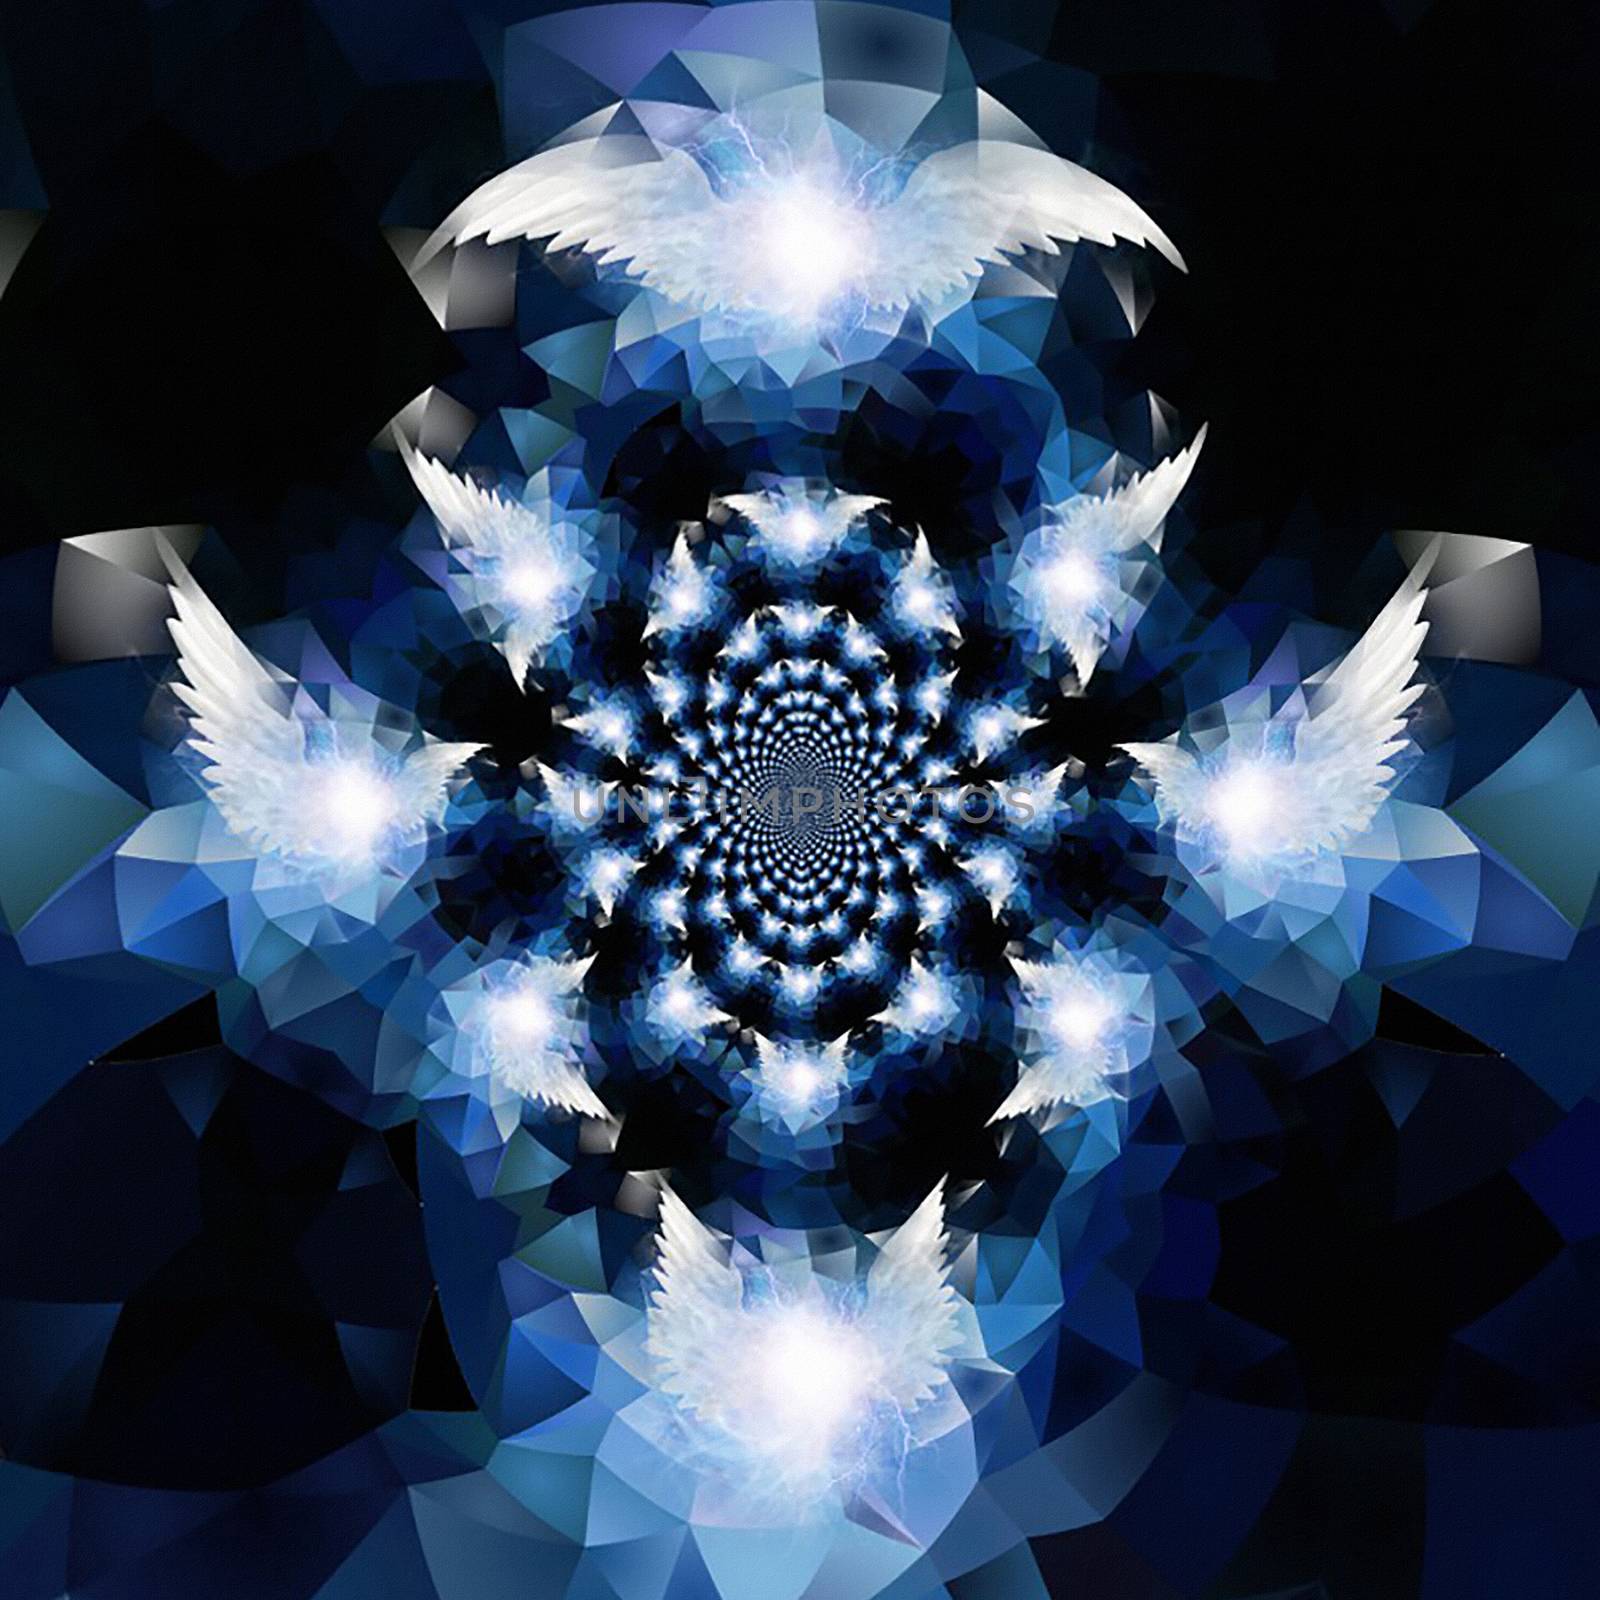 Angel wings. Mirrored fractal. 3D rendering